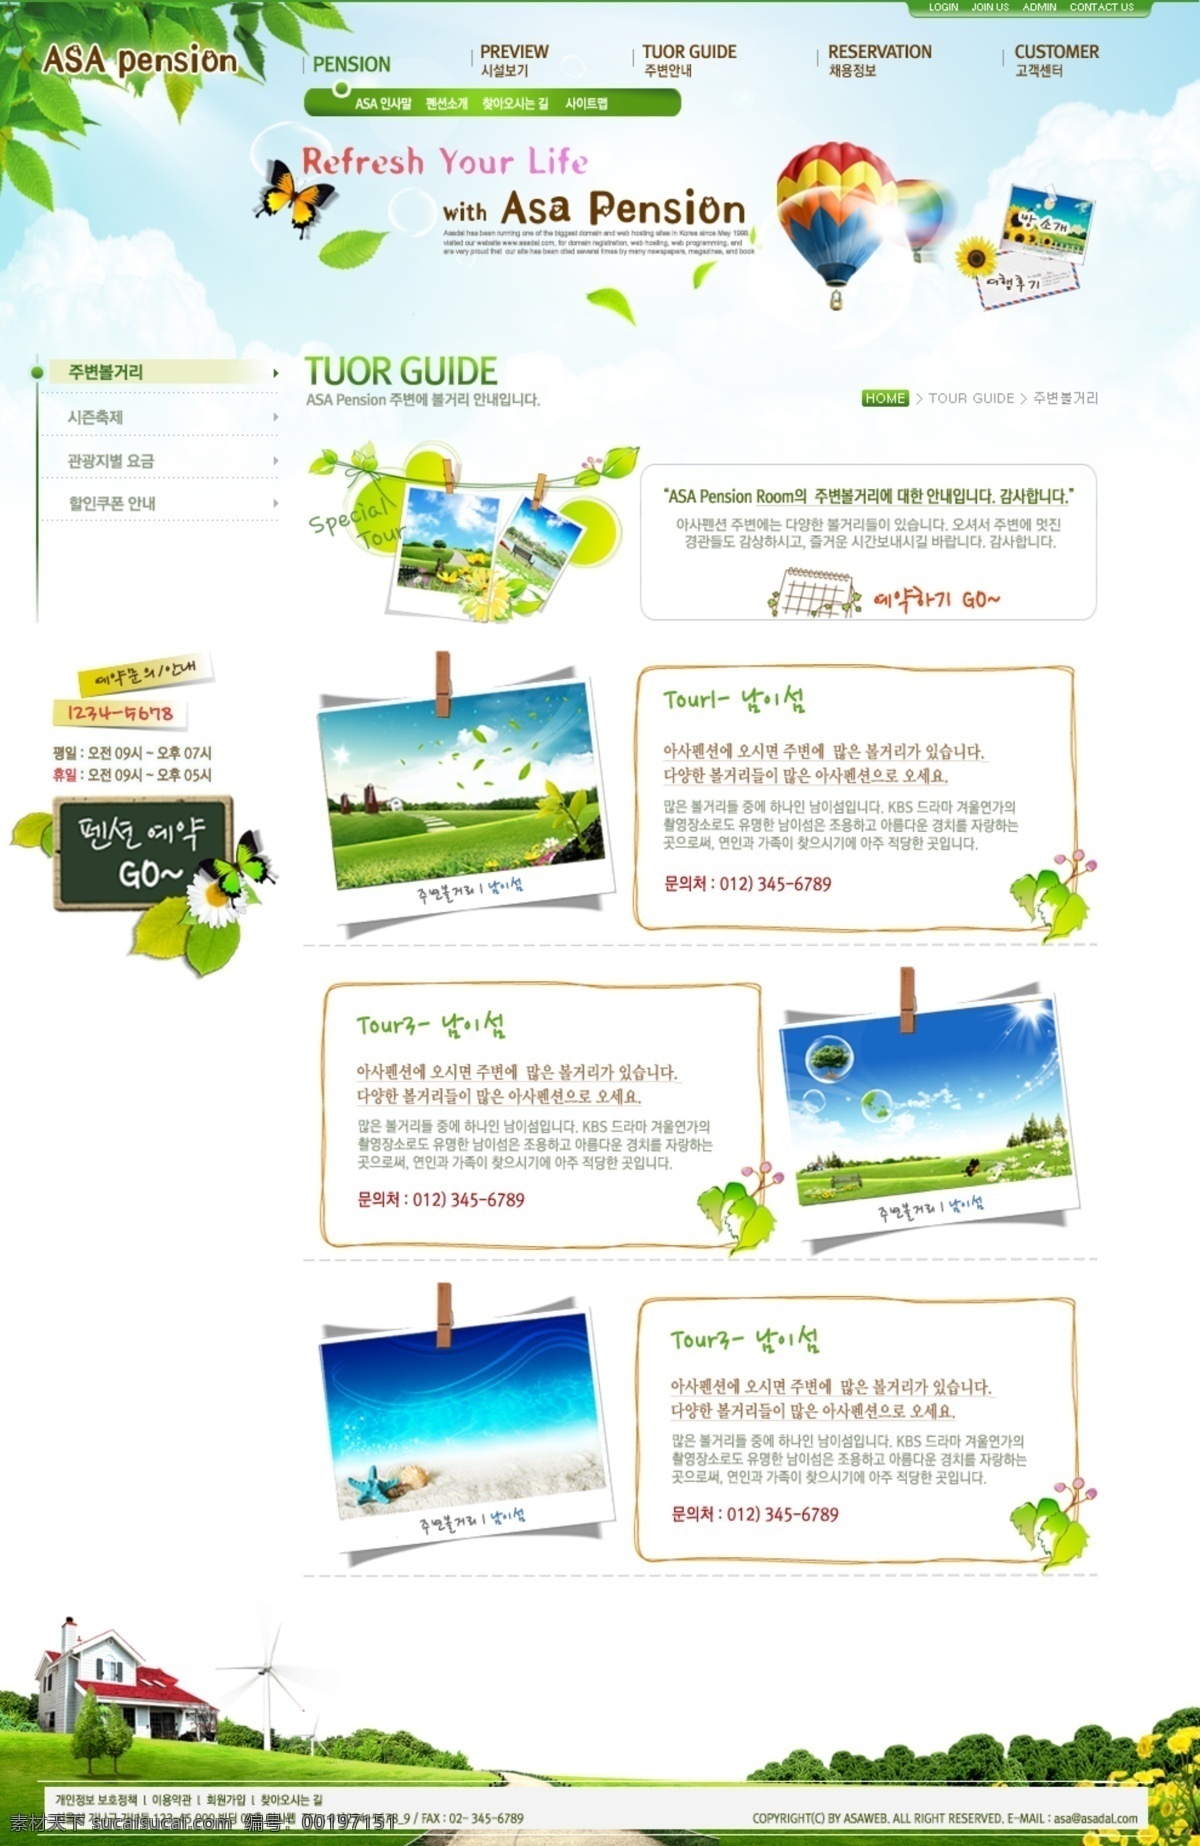 企业 产品 介绍 页 产品介绍 绿叶 树 图片夹 网页素材 网页模板